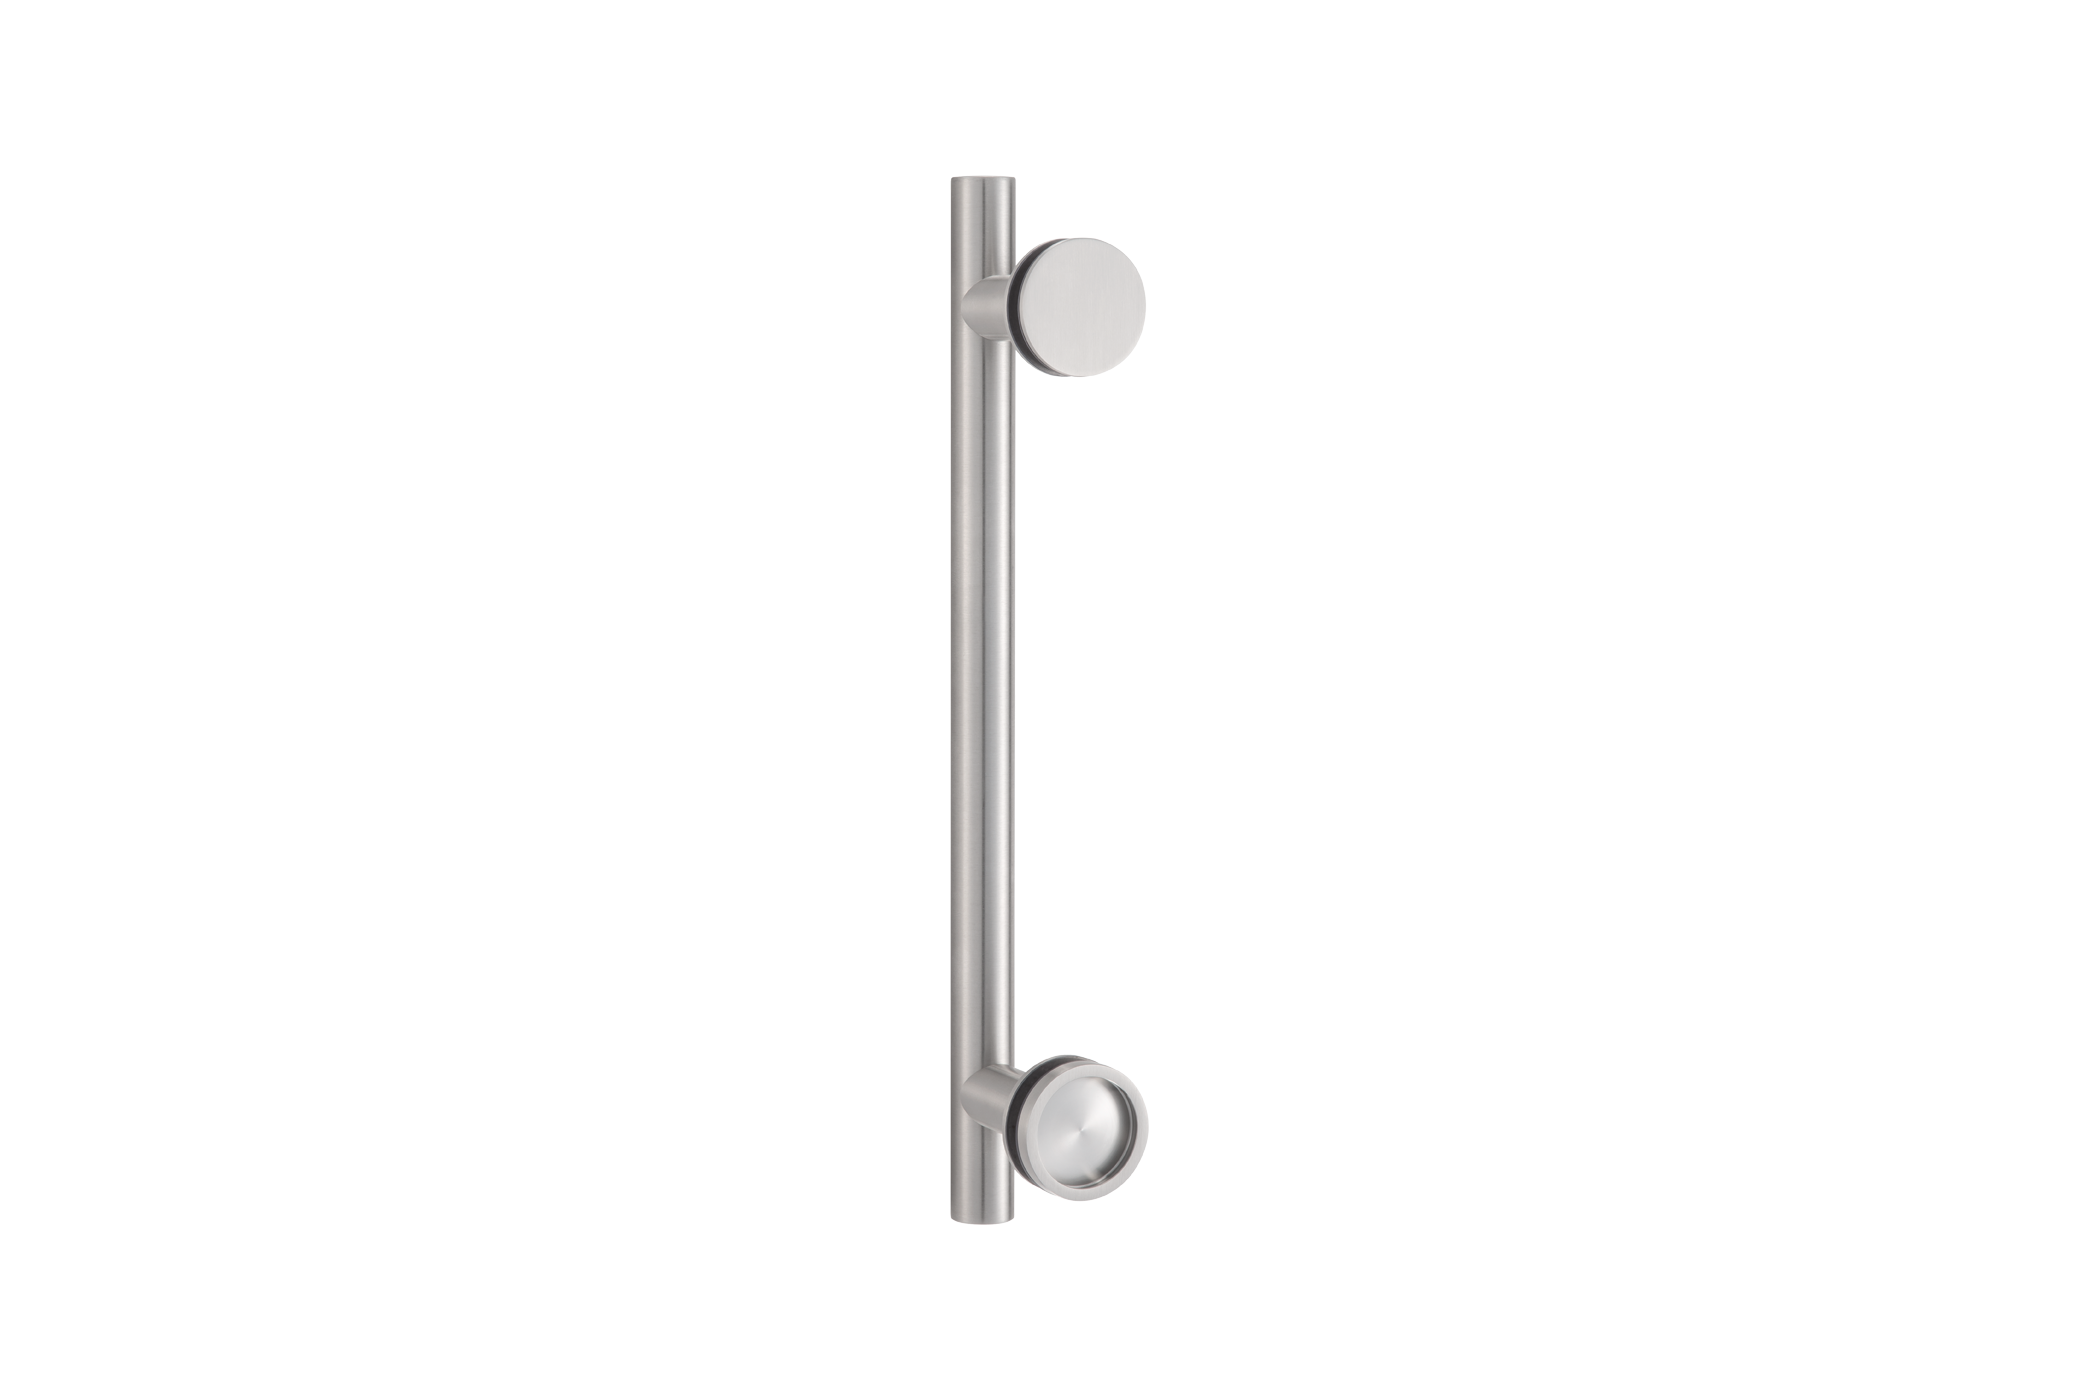 KWS Door handle 8270 in finish 82 (stainless steel, matte)